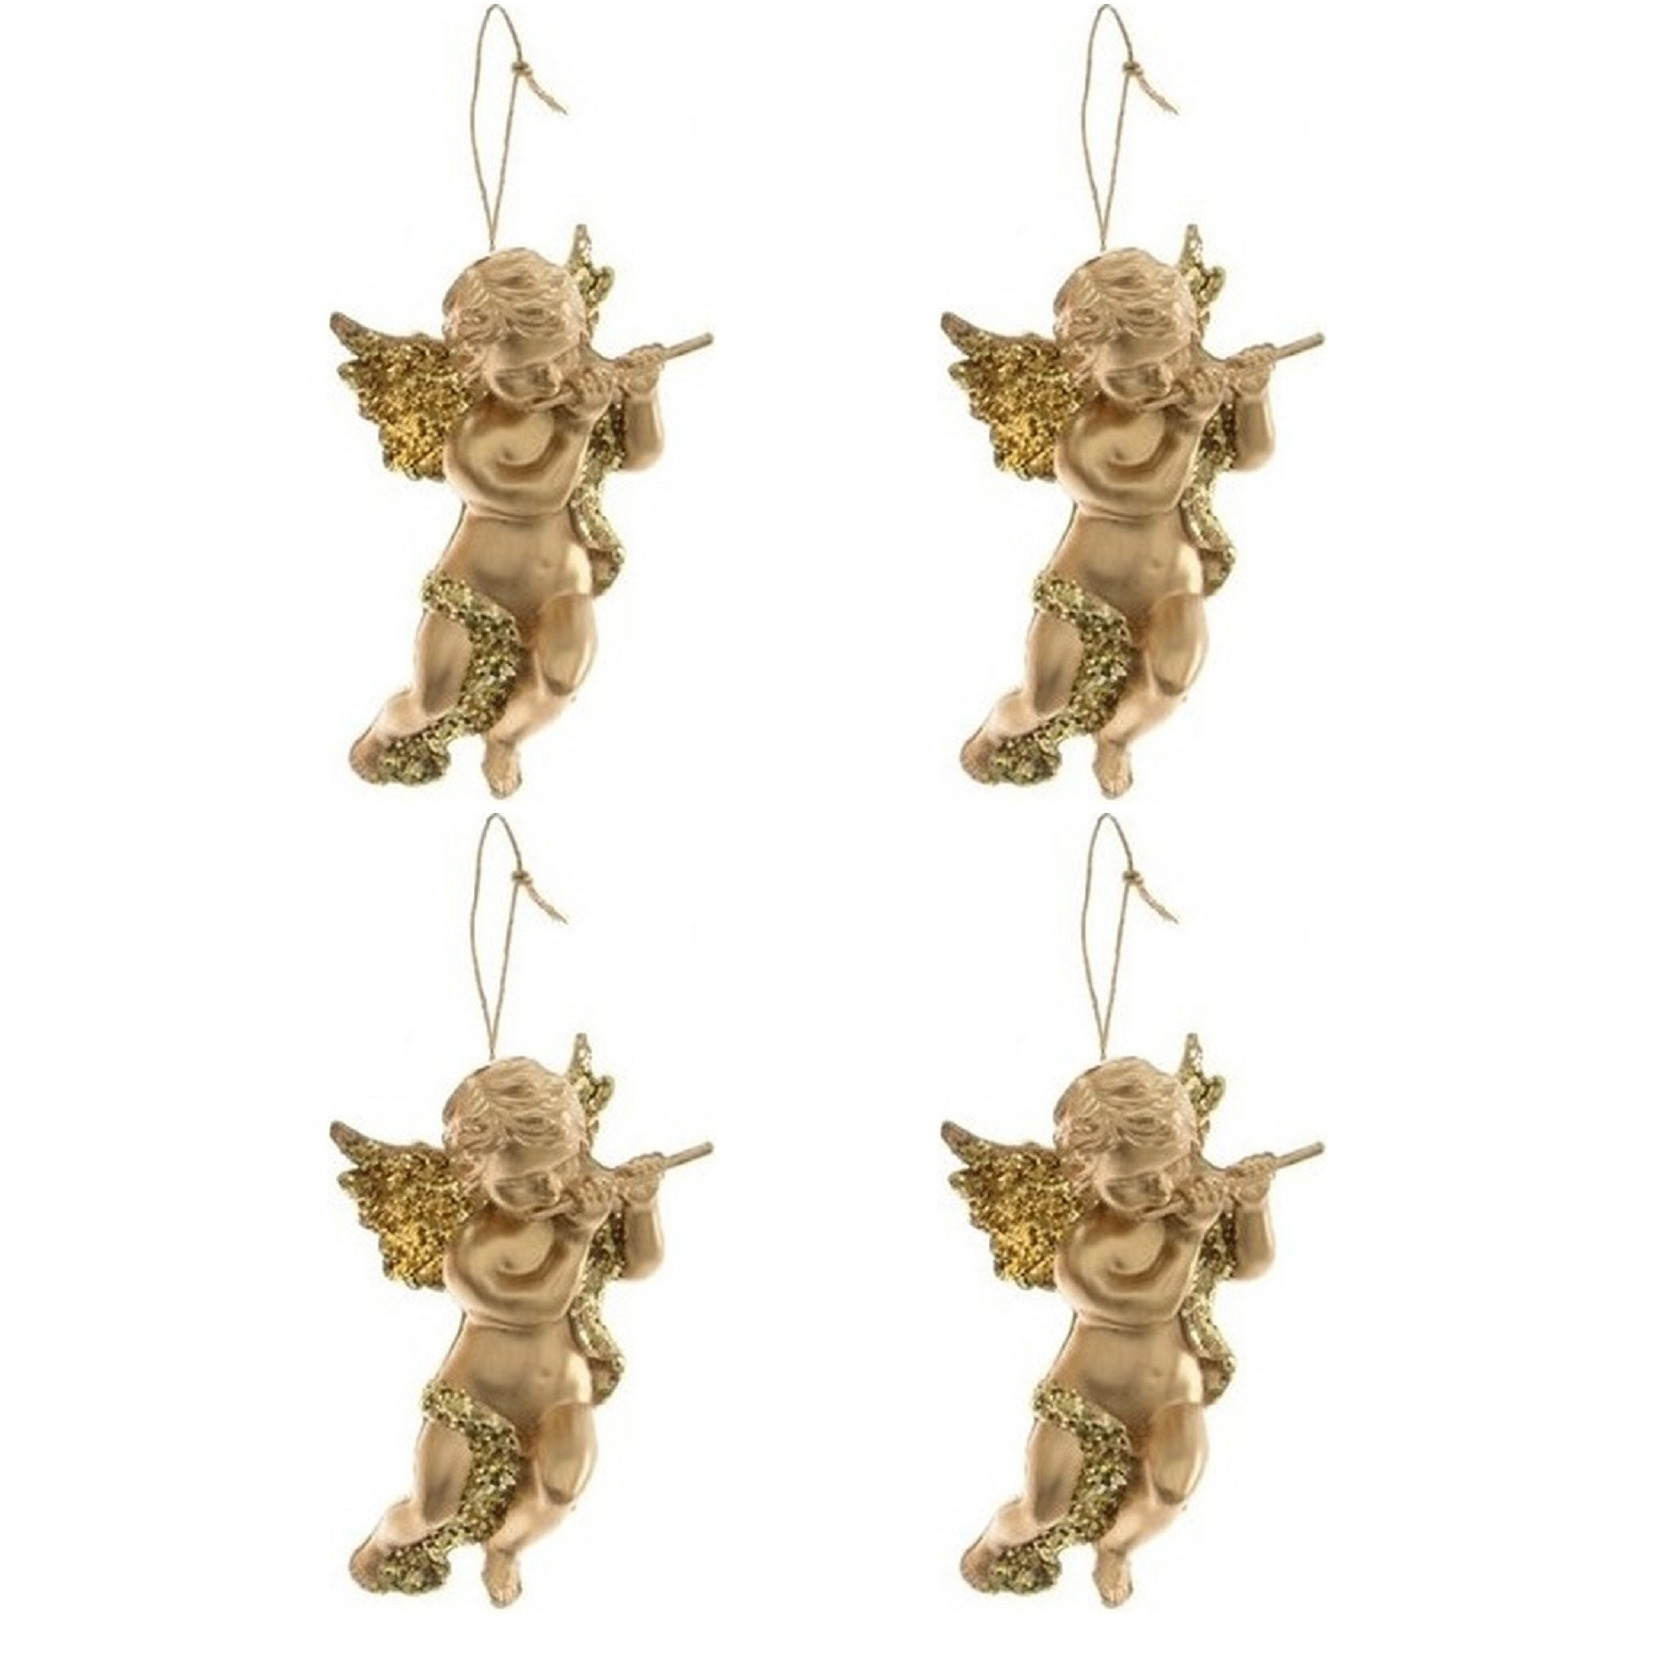 4x Kerstboomhanger-Kersthanger gouden engelen met dwarsfluit 10 cm